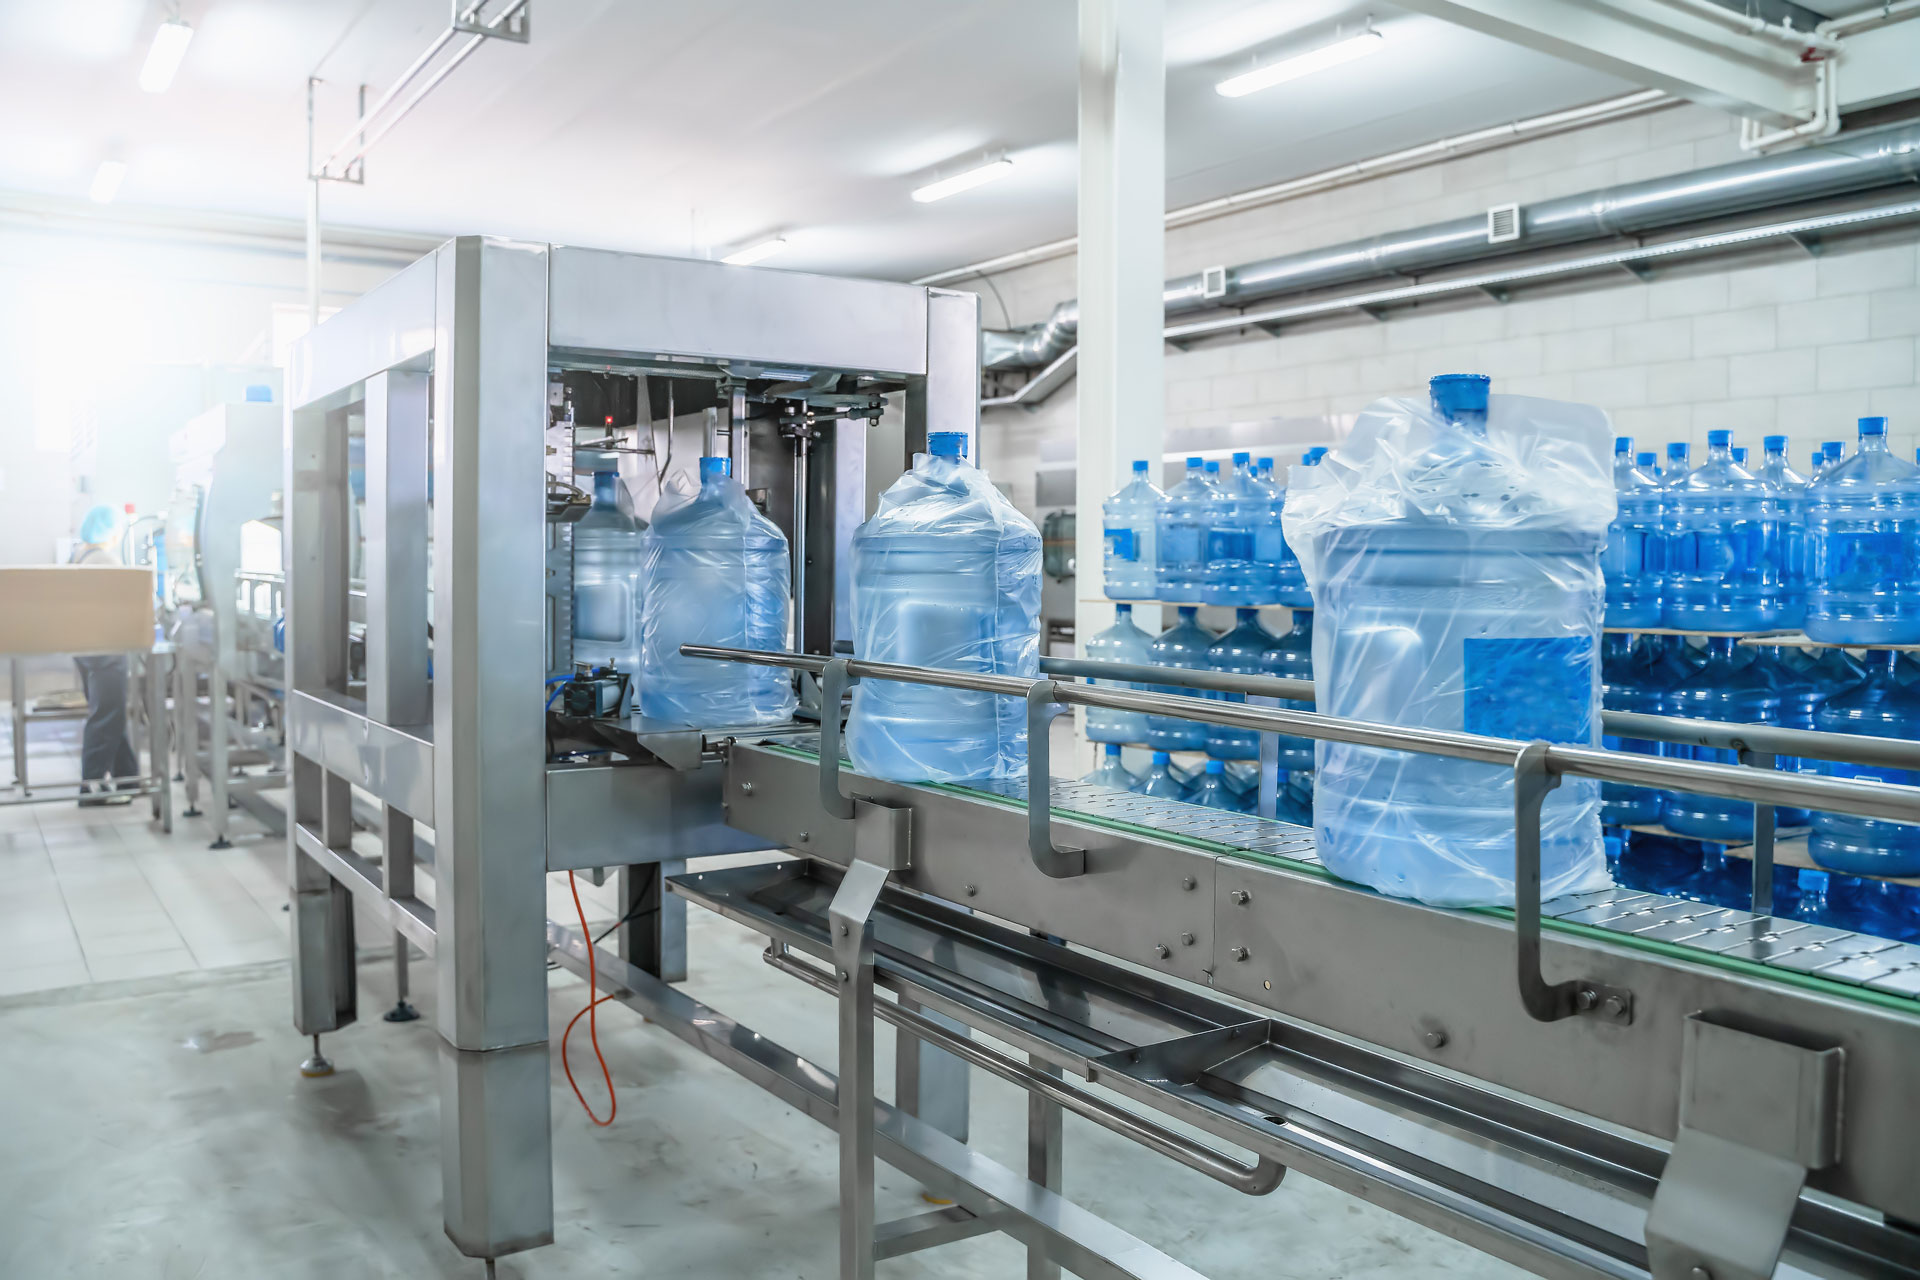 Getränkeherstellung in Lebensmittelindustriehalle, blaue Wasserflaschen auf Förderband